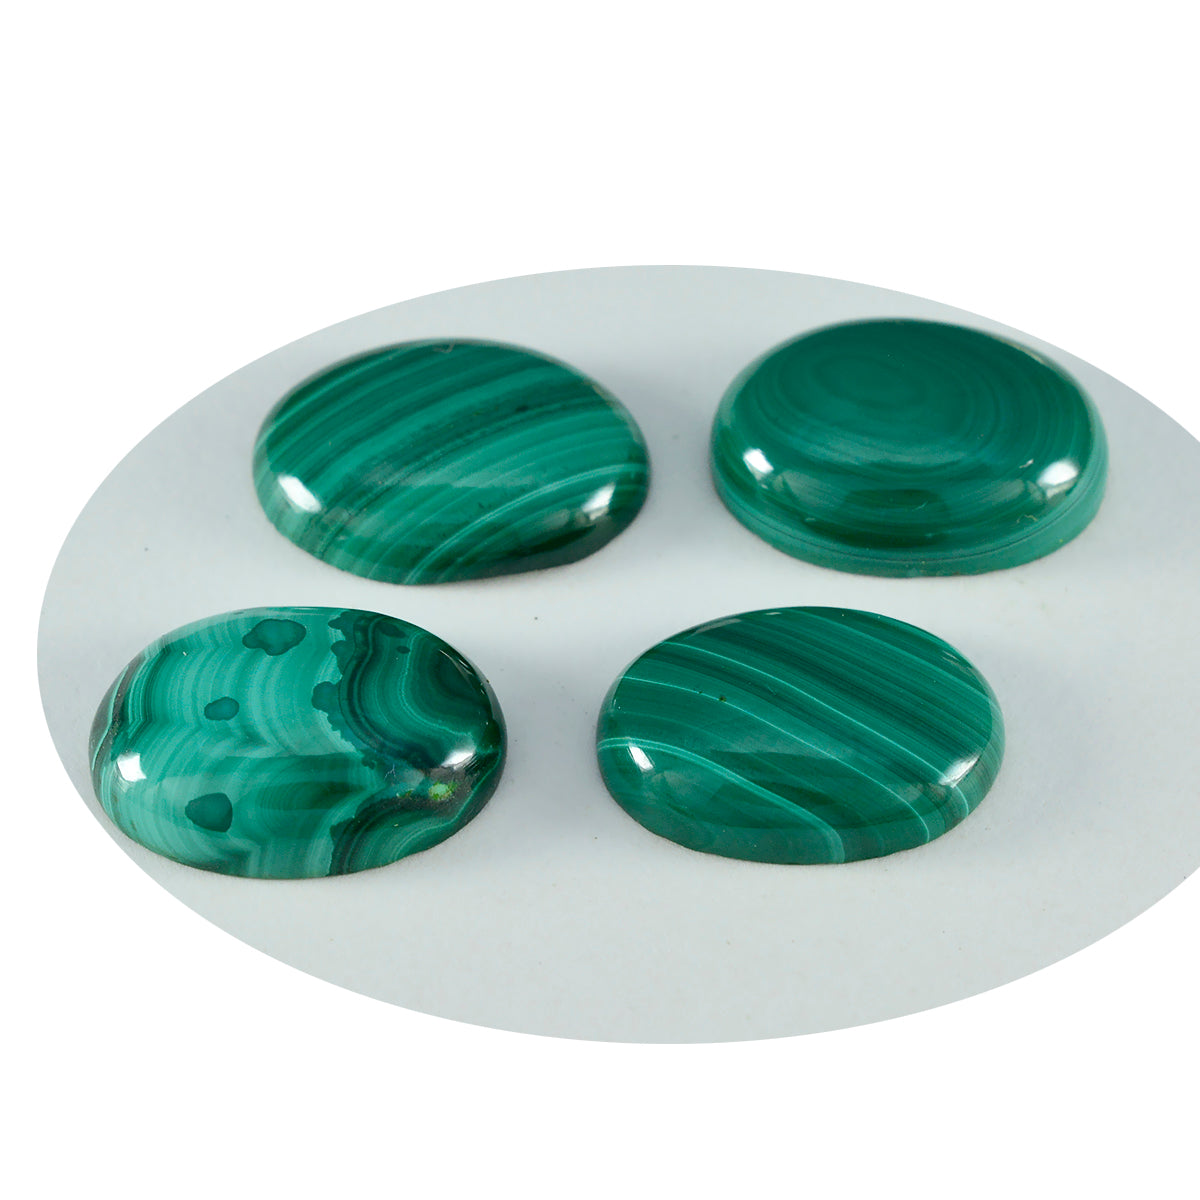 riyogems 1шт зеленый малахит кабошон 10х12 мм овальной формы качественный россыпной камень